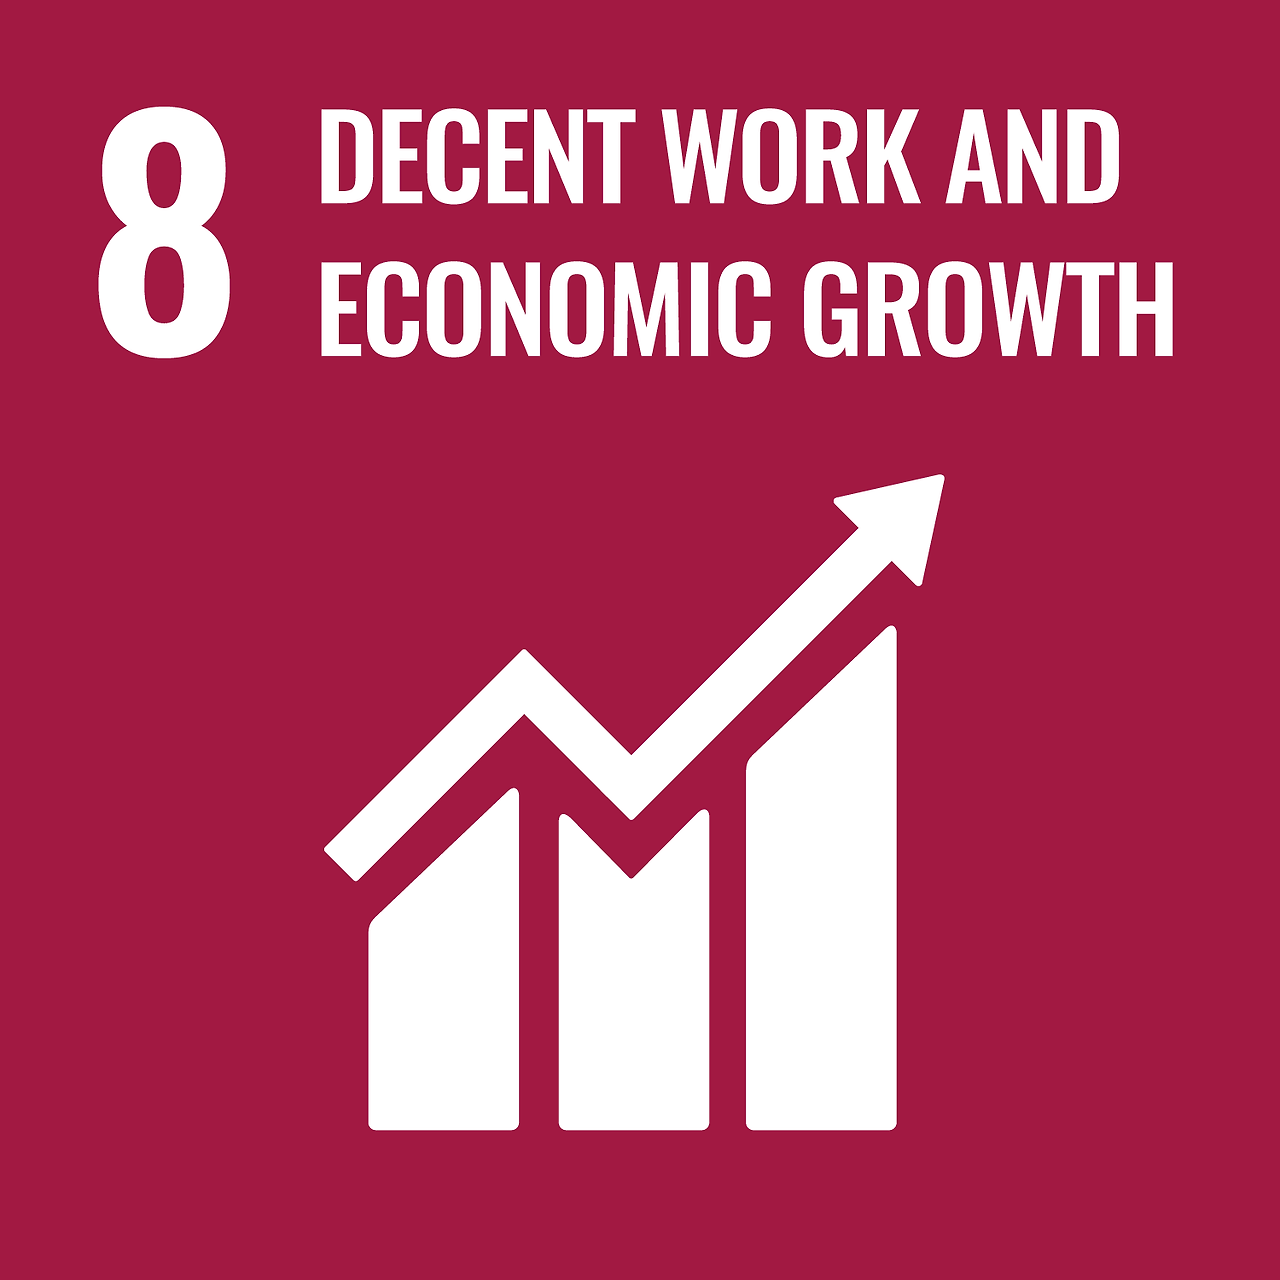 양질의 일자리와 경제성장 - 포용적이고 지속가능한 경제성장, 완전하고 생산적인 고용과 모두를 위한 양질의 일자리 증진